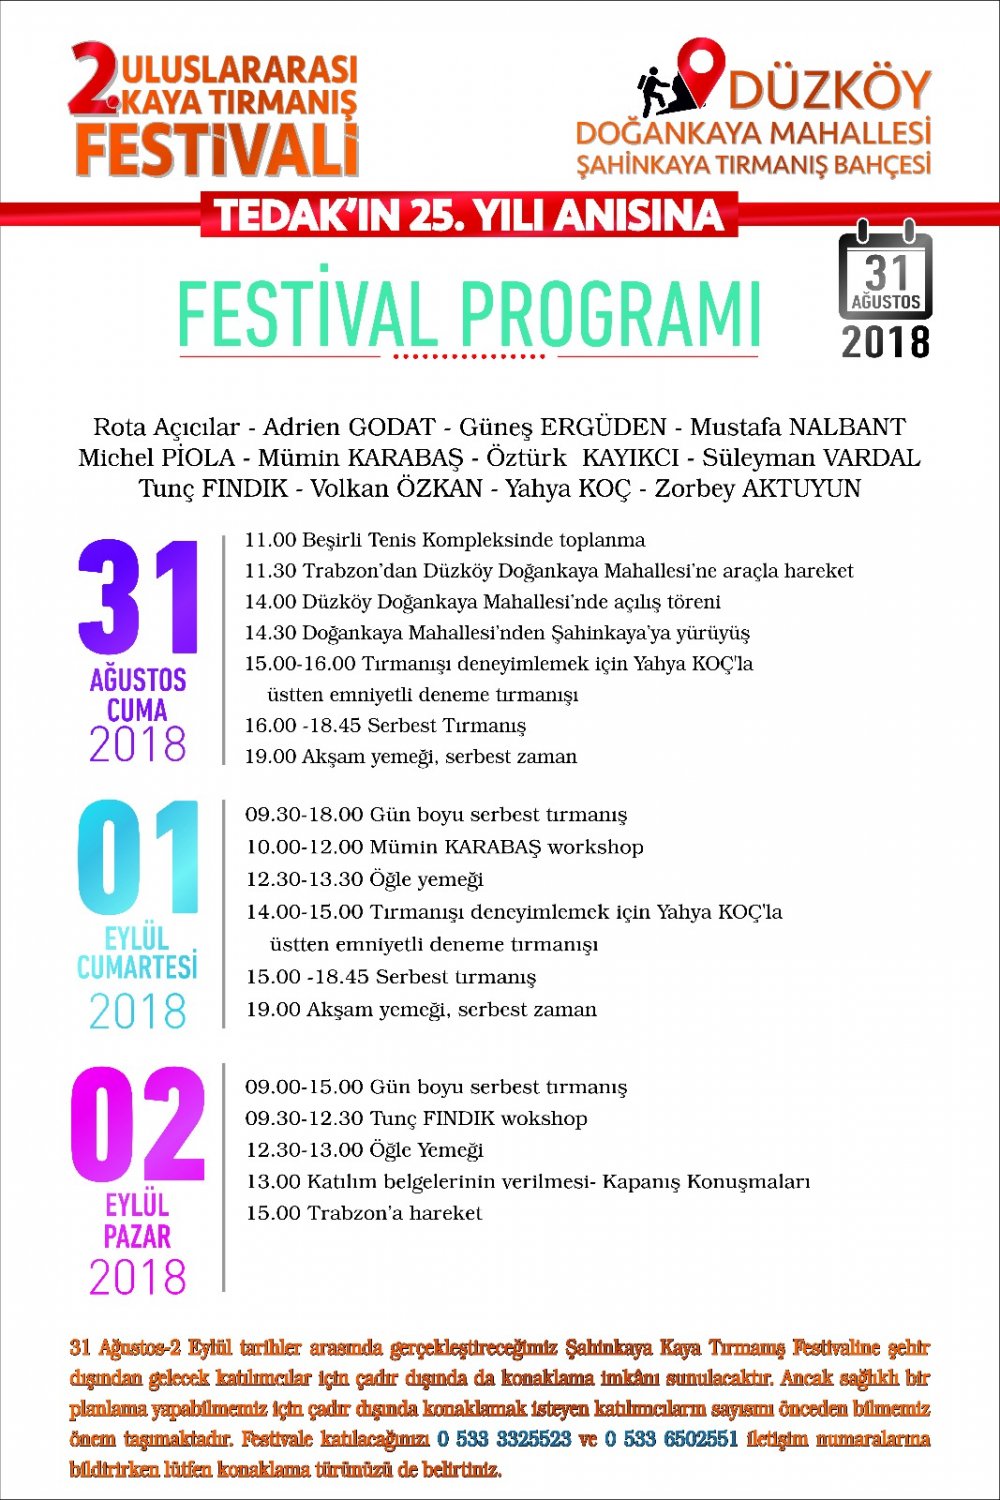 Düzköy'de Uluslararası Festival başlıyor